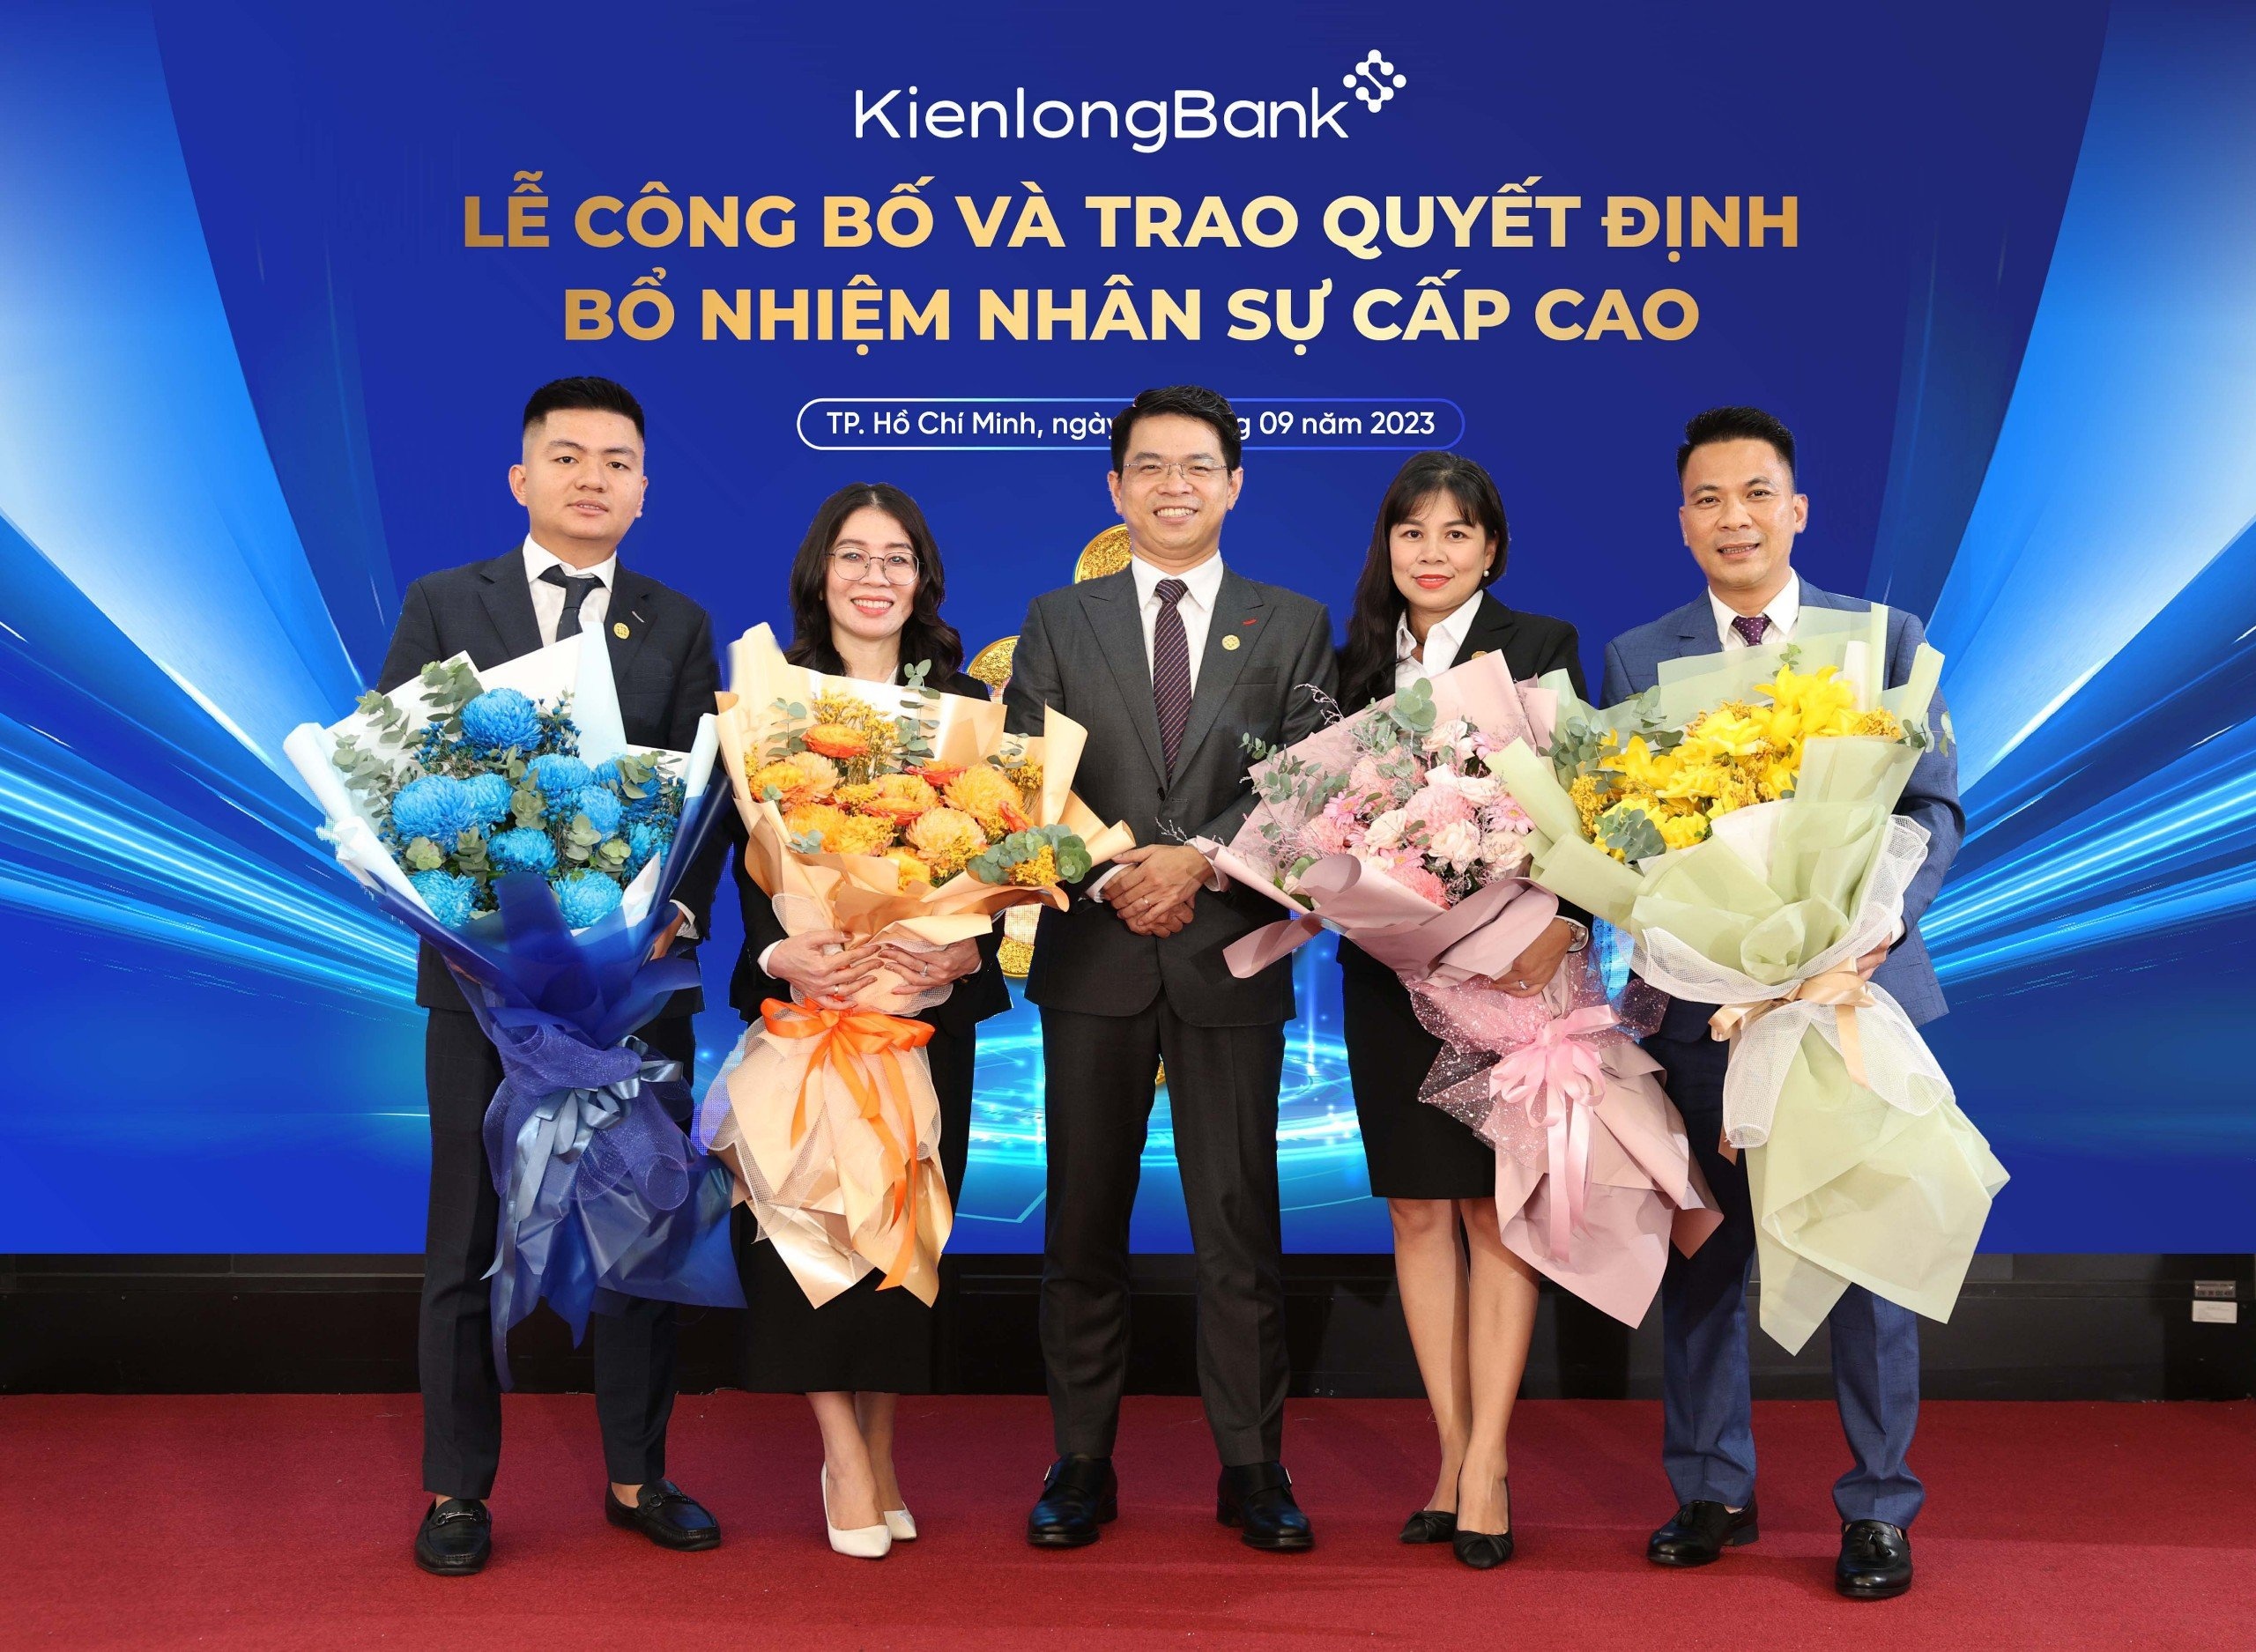 KienlongBank bổ nhiệm Phó Tổng Giám đốc